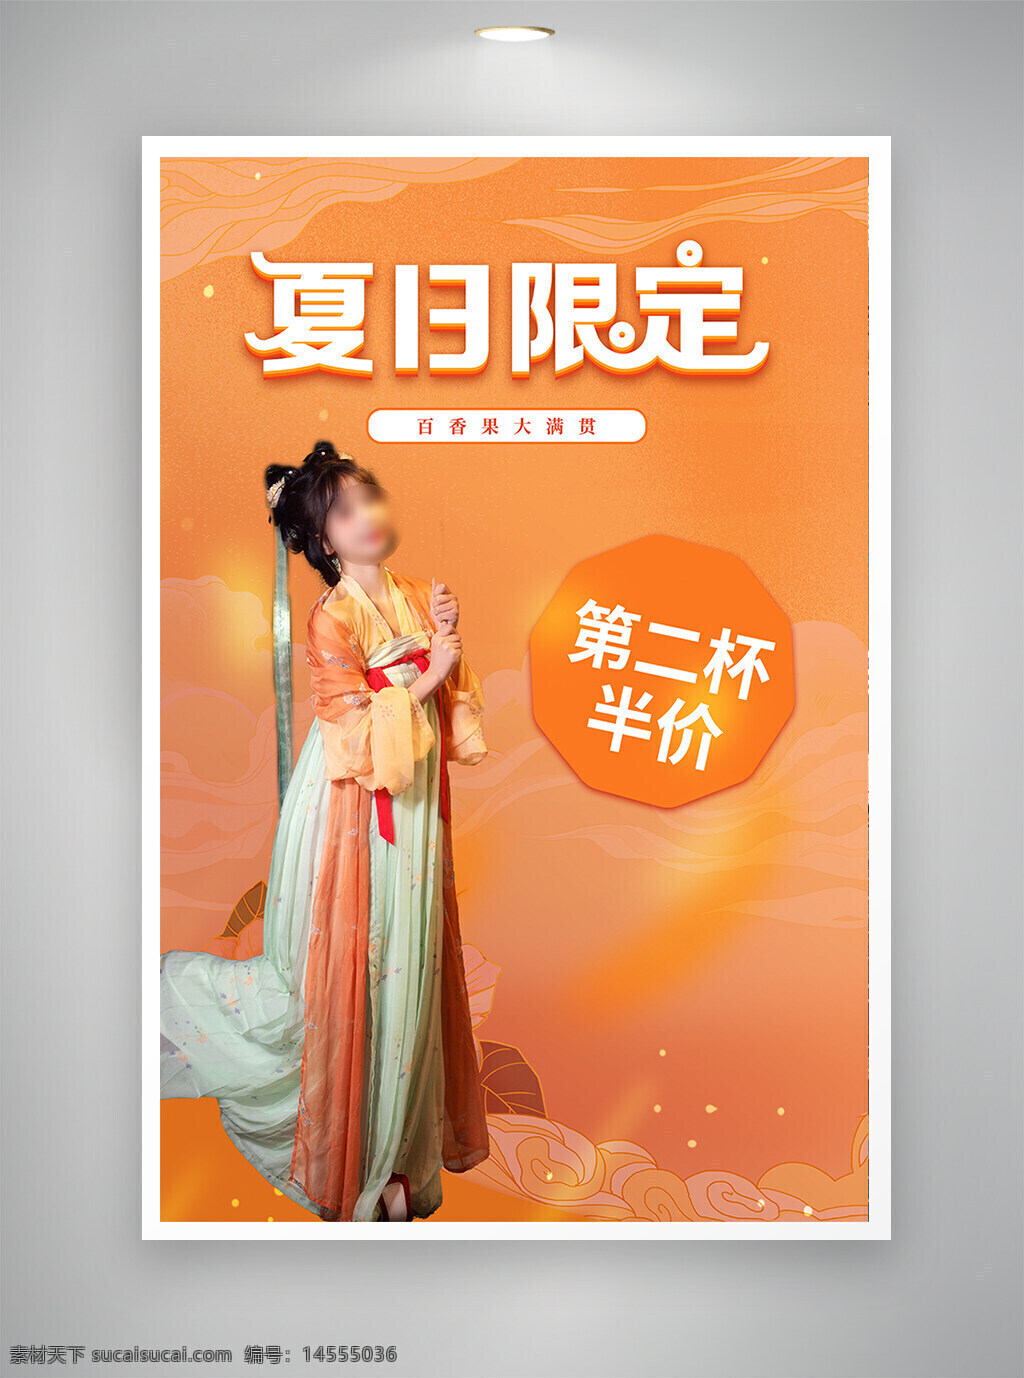 中国风海报 促销海报 节日海报 古风海报 夏日限定